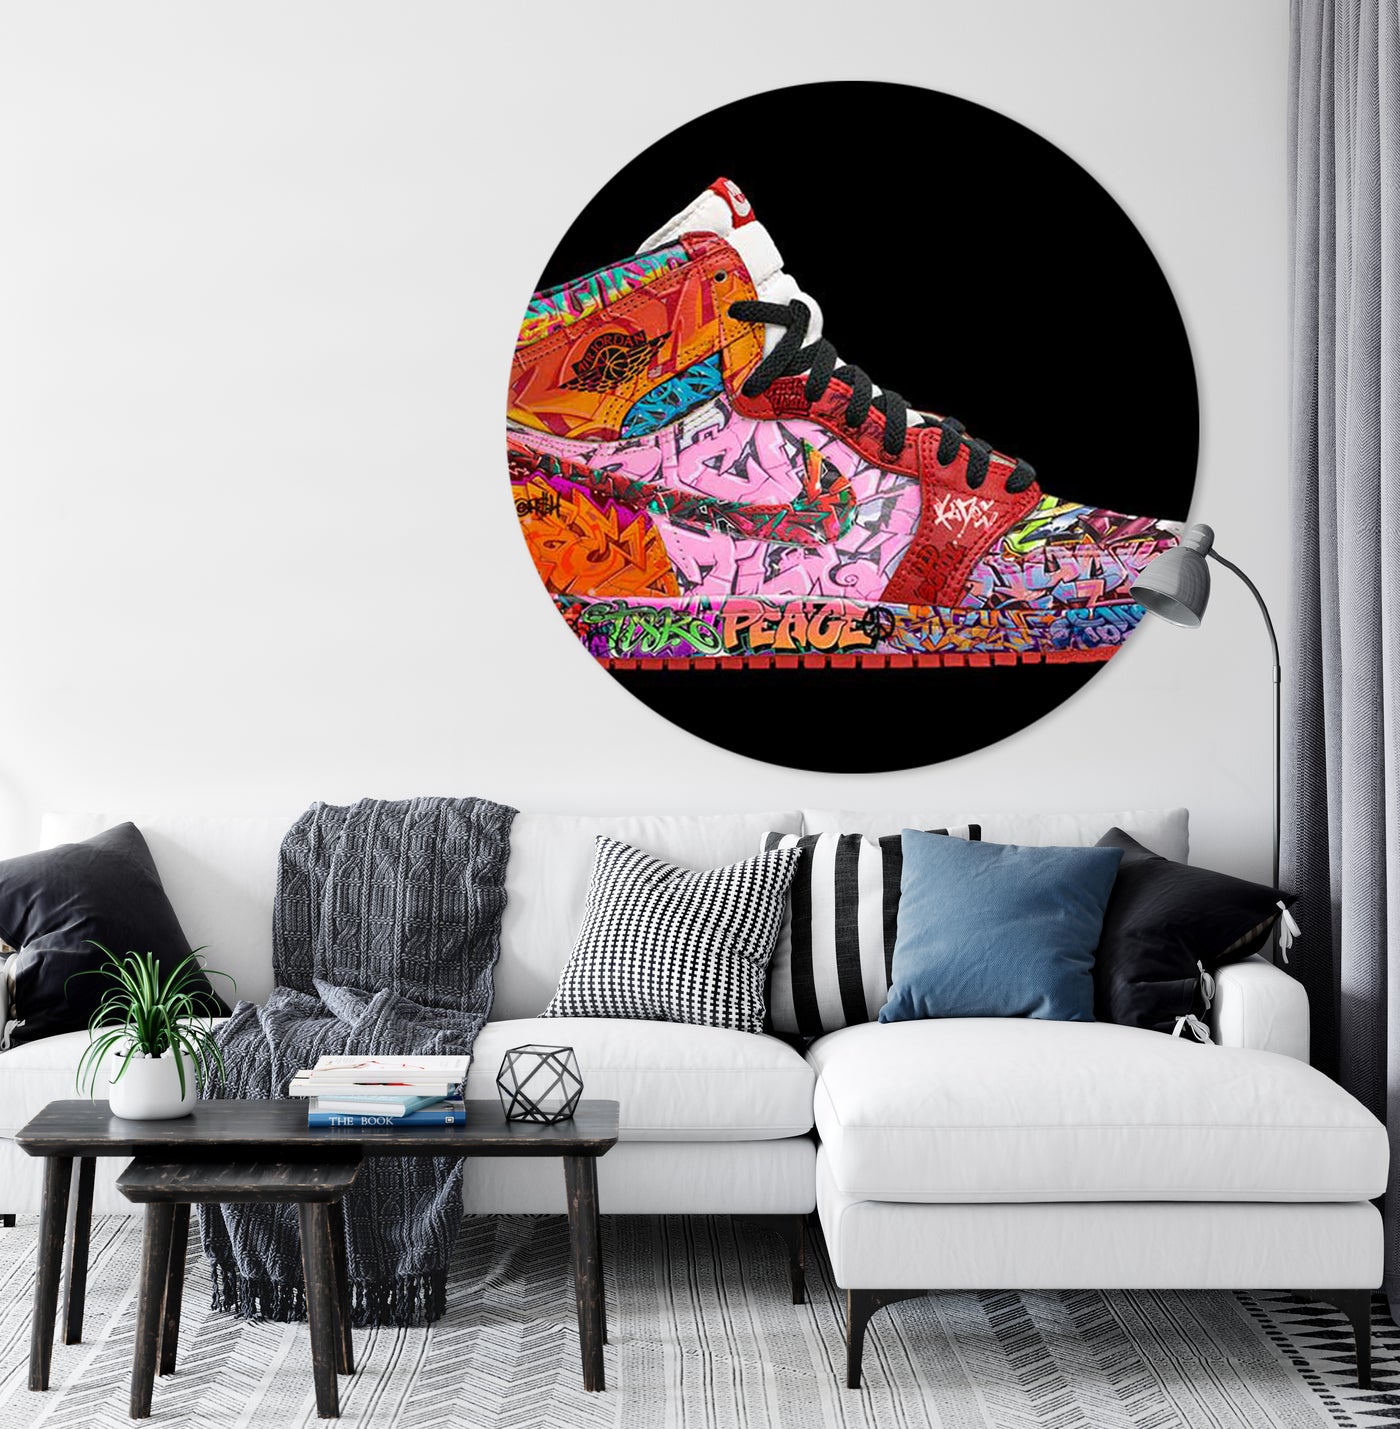 Air Jordan - Rene Ladenius Digital Art